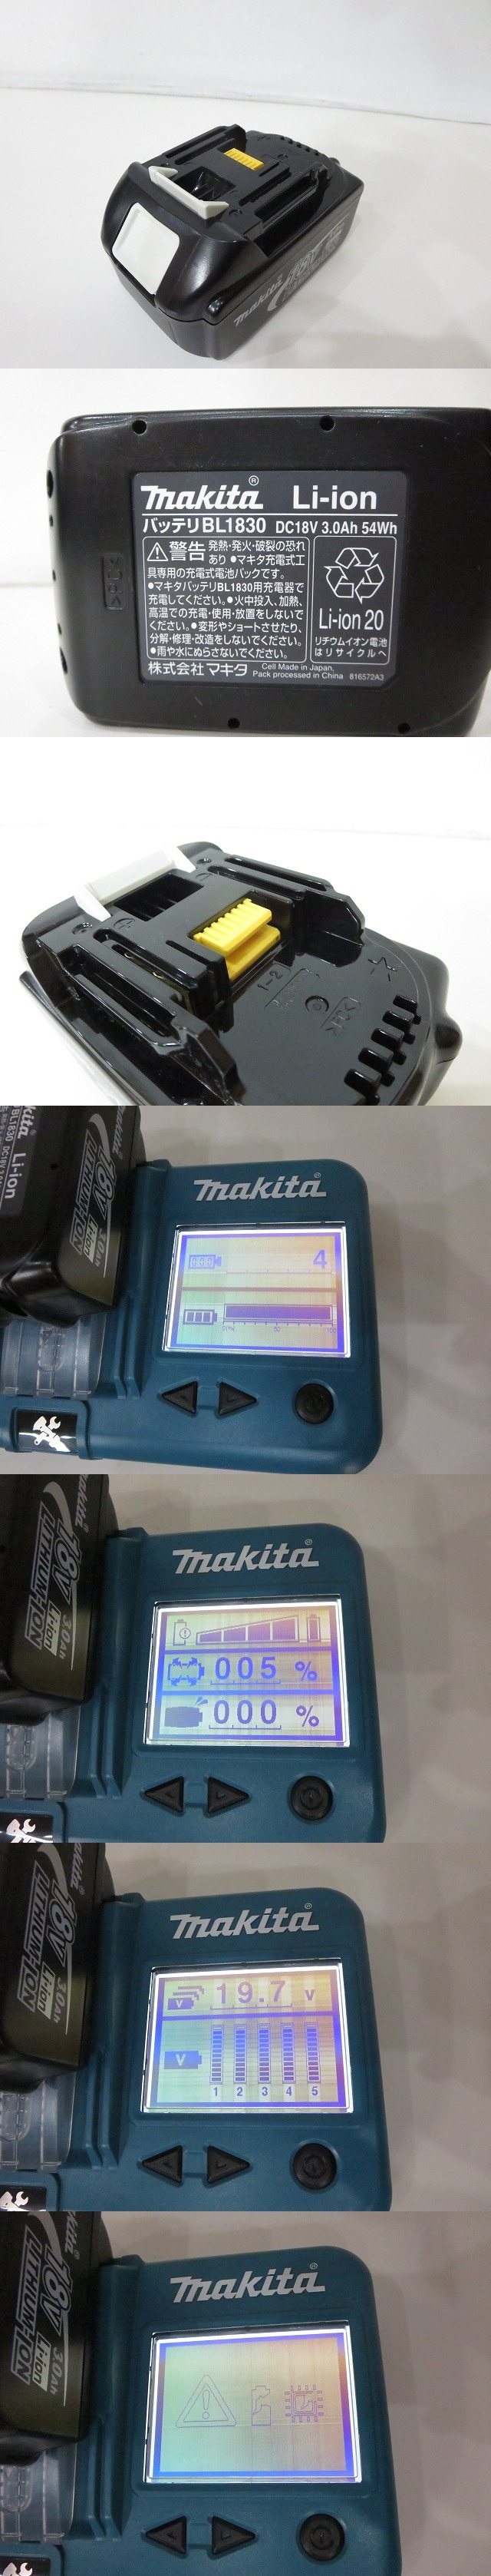 お得お買い得makita [マキタ] 100mm充電式ディスクグラインダ [GA402DRF] 18V 3.0Ah 2013年 電動工具 ※充電4回 バッテリー劣化有/ジャンク品扱い 4362 ディスクグラインダー